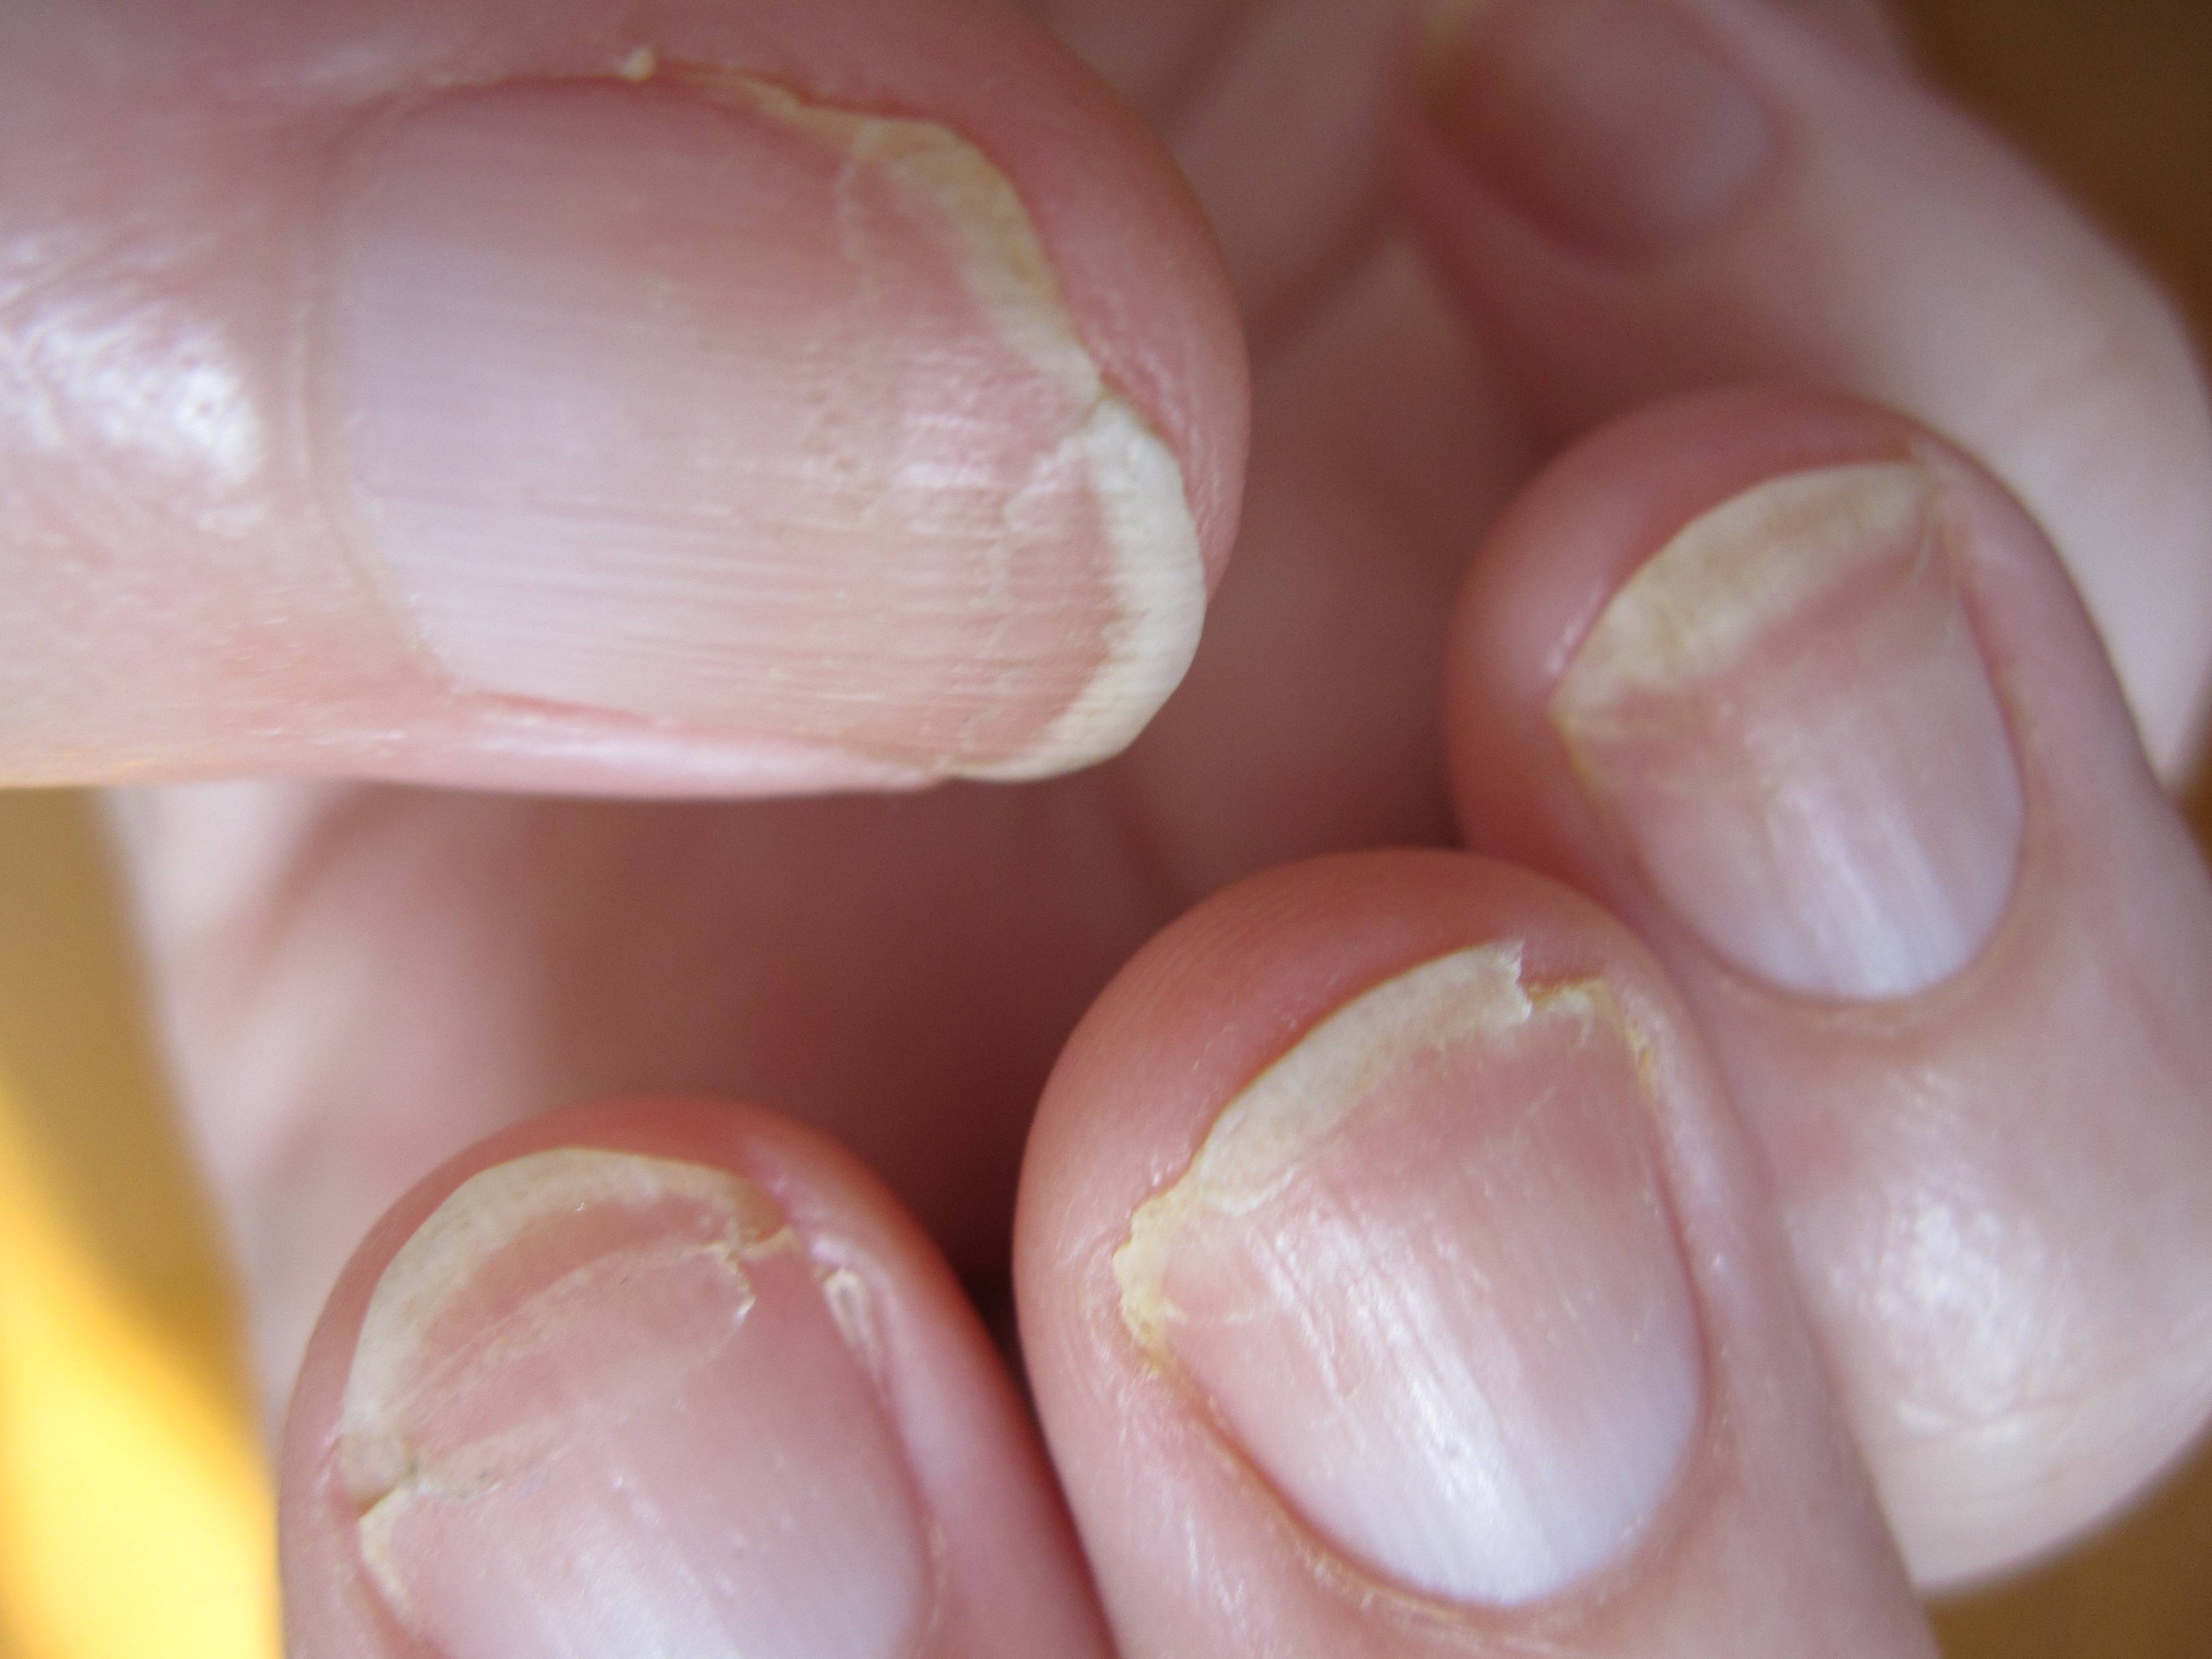 Проблема с ногтями к какому врачу обратиться. Онихорексис, ониходистрофия. Ониходистрофия - онихолизис.. Ониходистрофия (дистрофия ногтей). Онихошизис слоятся ногти.